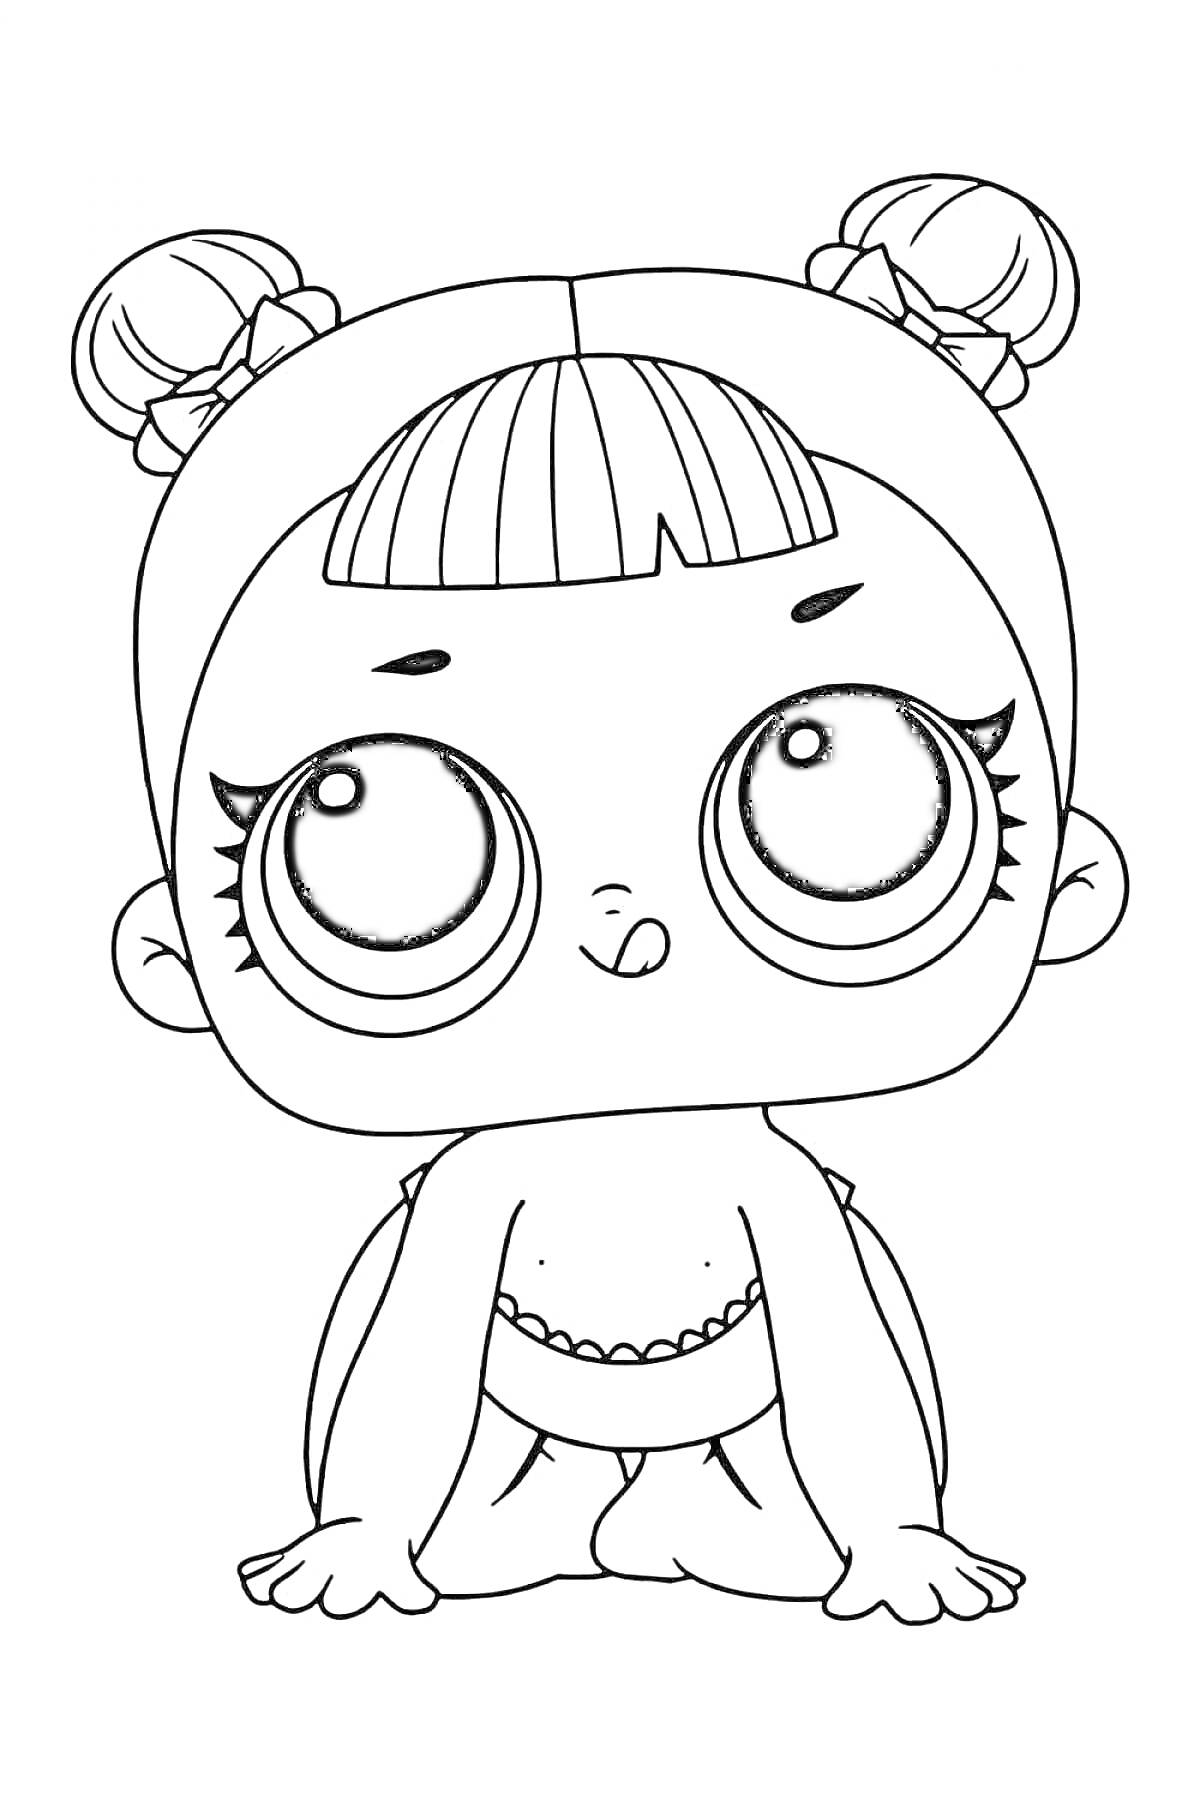 Раскраска Кукла ЛОЛ с двумя пучками, челкой и большими глазами, стоящая на коленях